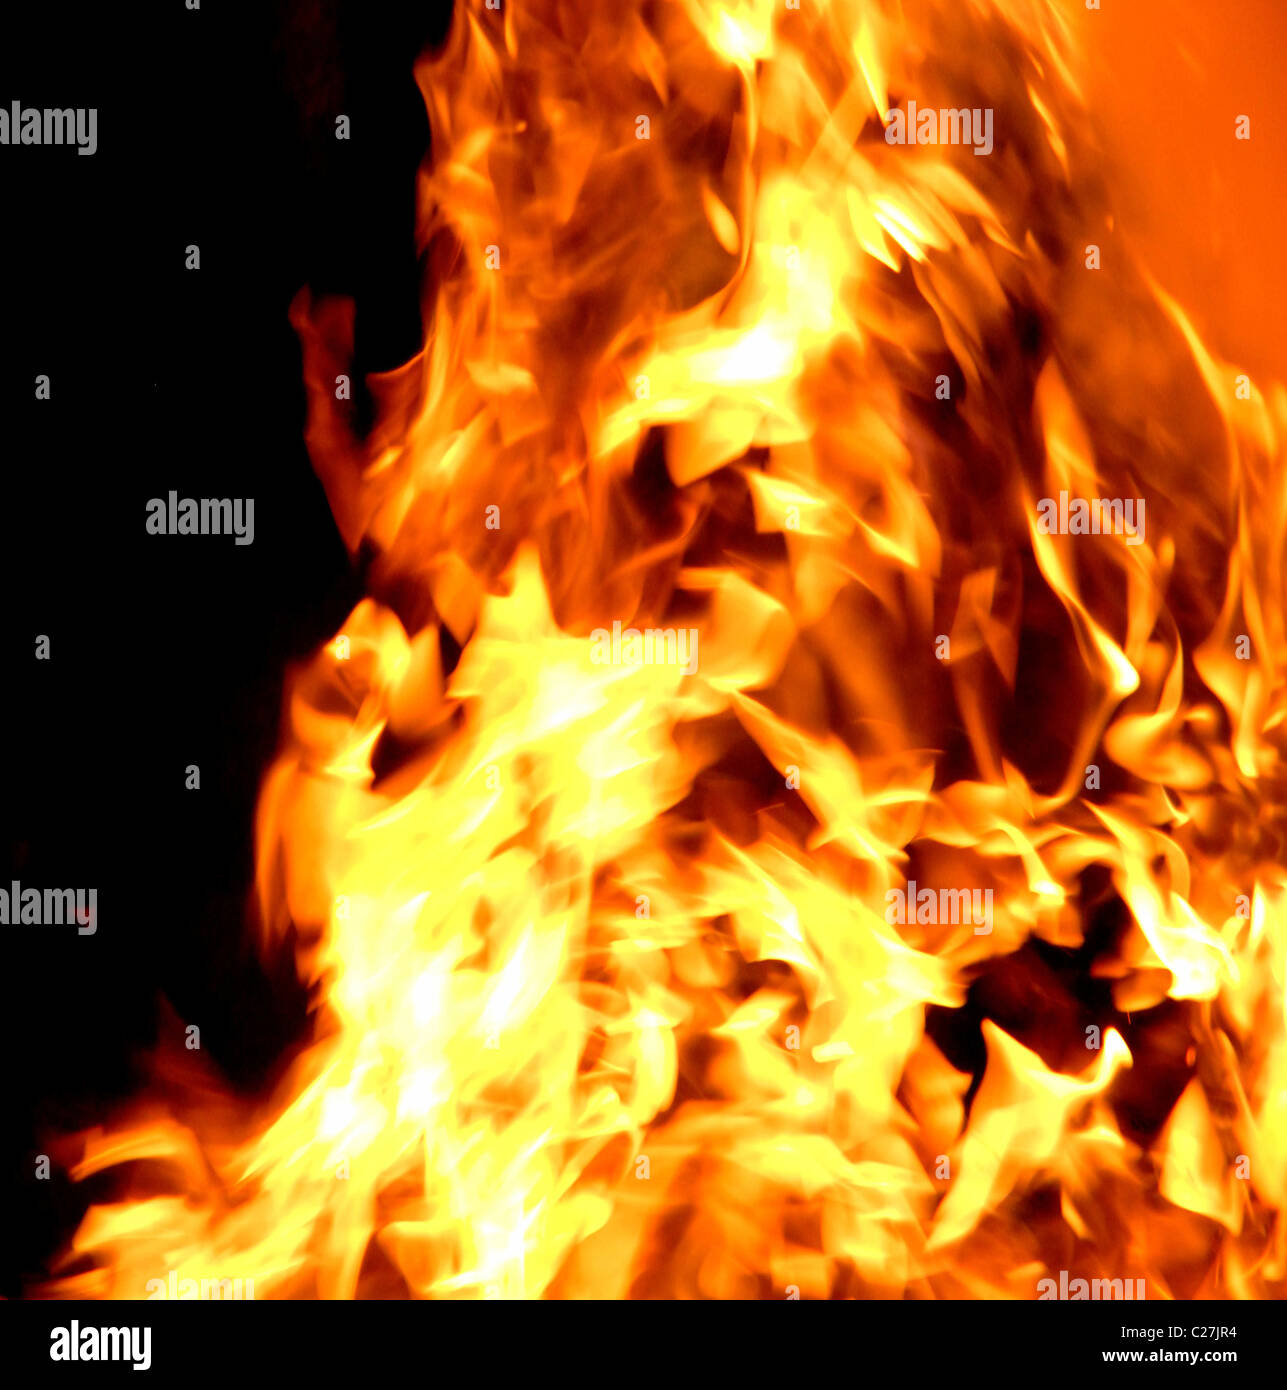 Las llamas de un incendio, inferno. Hot cuerpo luminoso de la quema de gas procedente de parpadeo secuencias de material combustible. Foto de stock